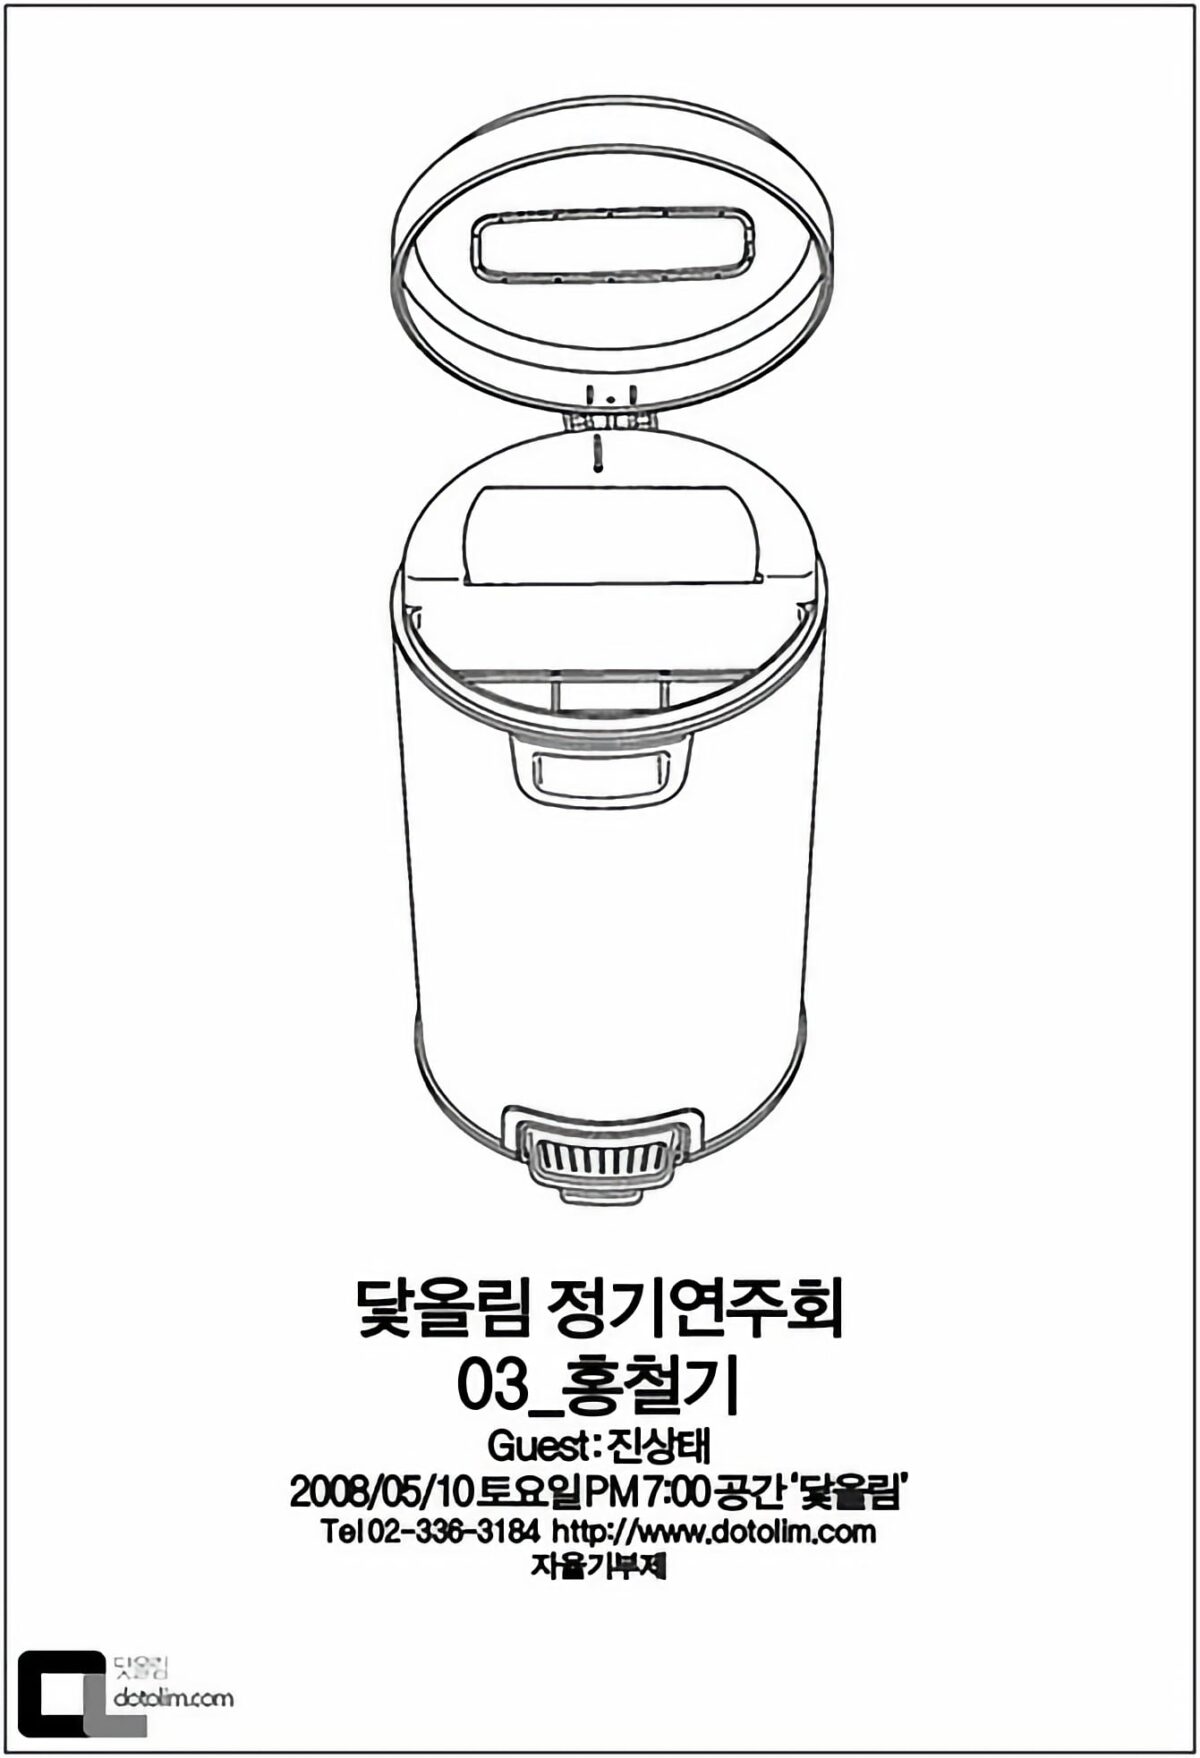 닻올림 정기연주회_03 : 홍철기